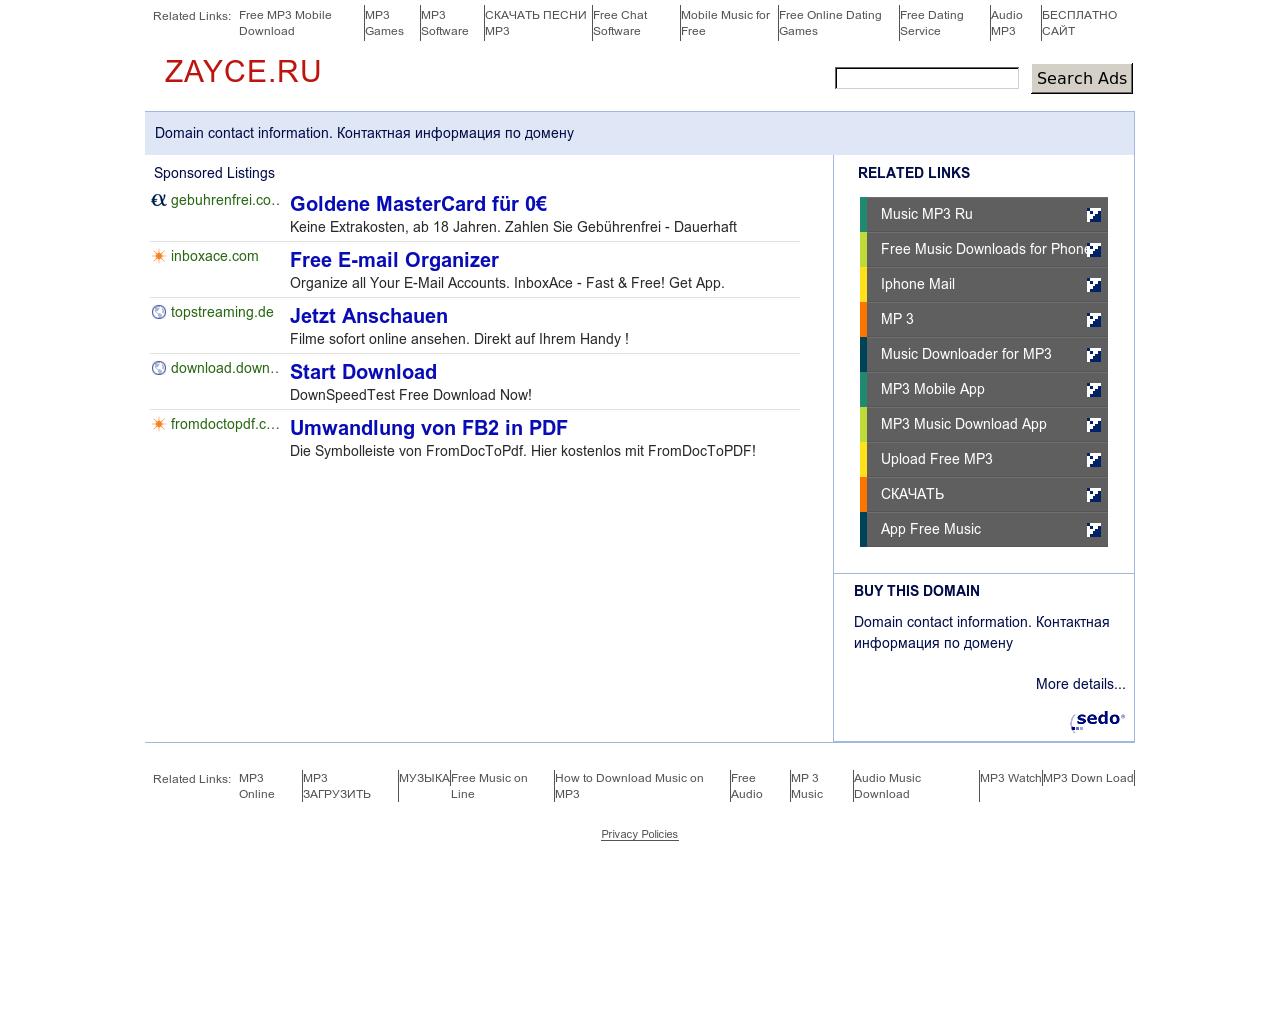 Изображение сайта zayce.ru в разрешении 1280x1024